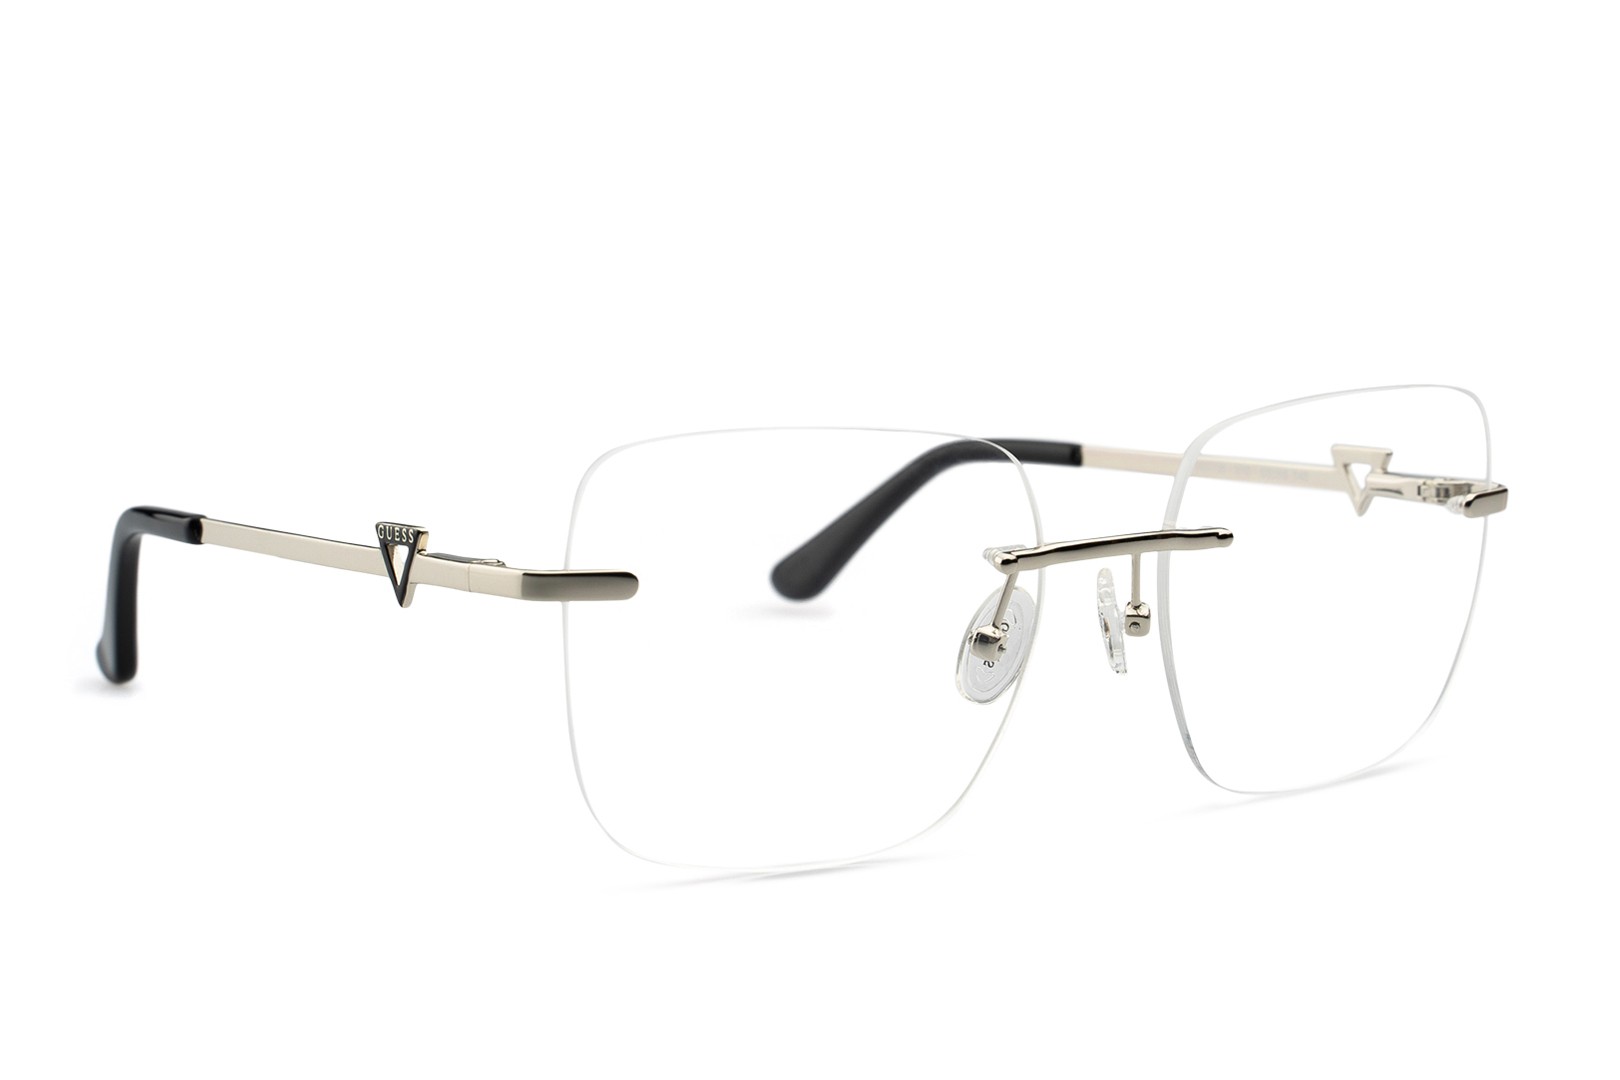 J+S Gafas de sol deportivas ultraligeras sin montura para hombre,  polarizadas, 100% protección UV